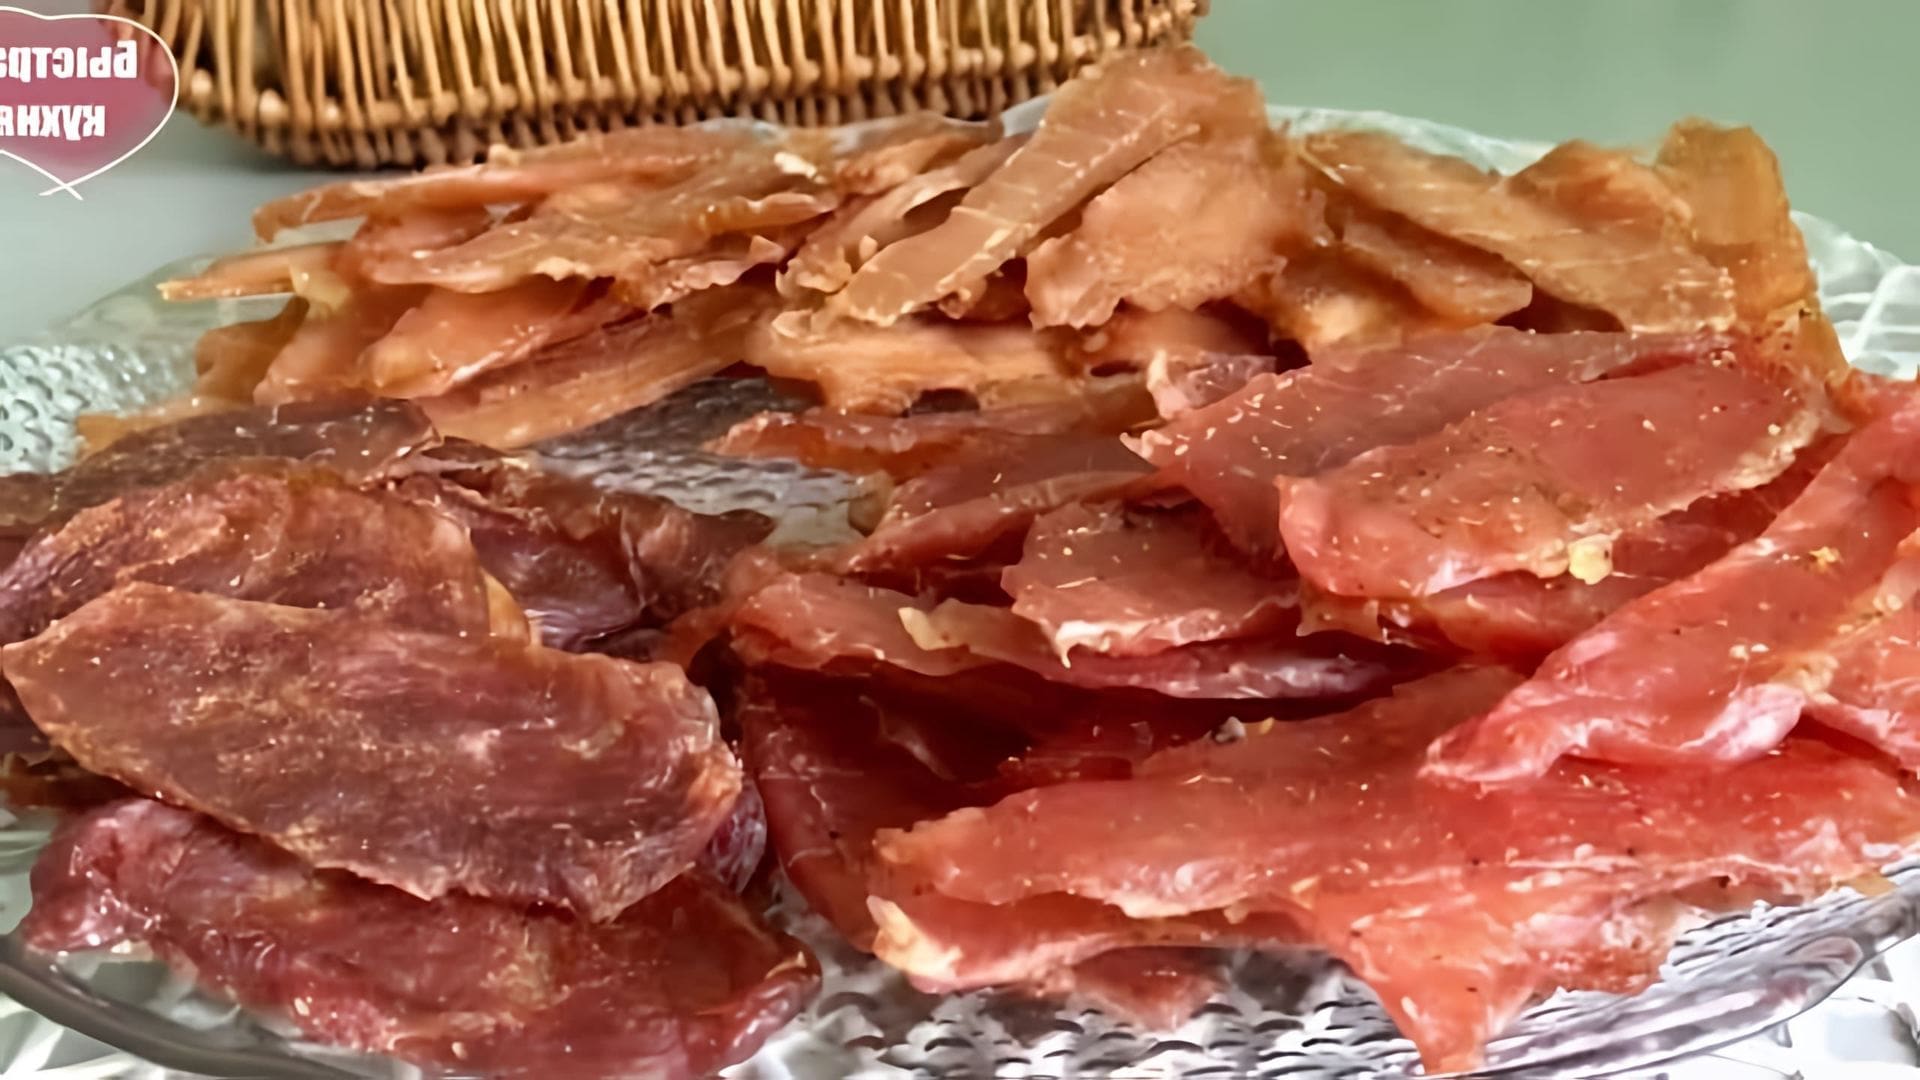 В данном видео демонстрируется процесс приготовления вяленого мяса, также известного как джерки